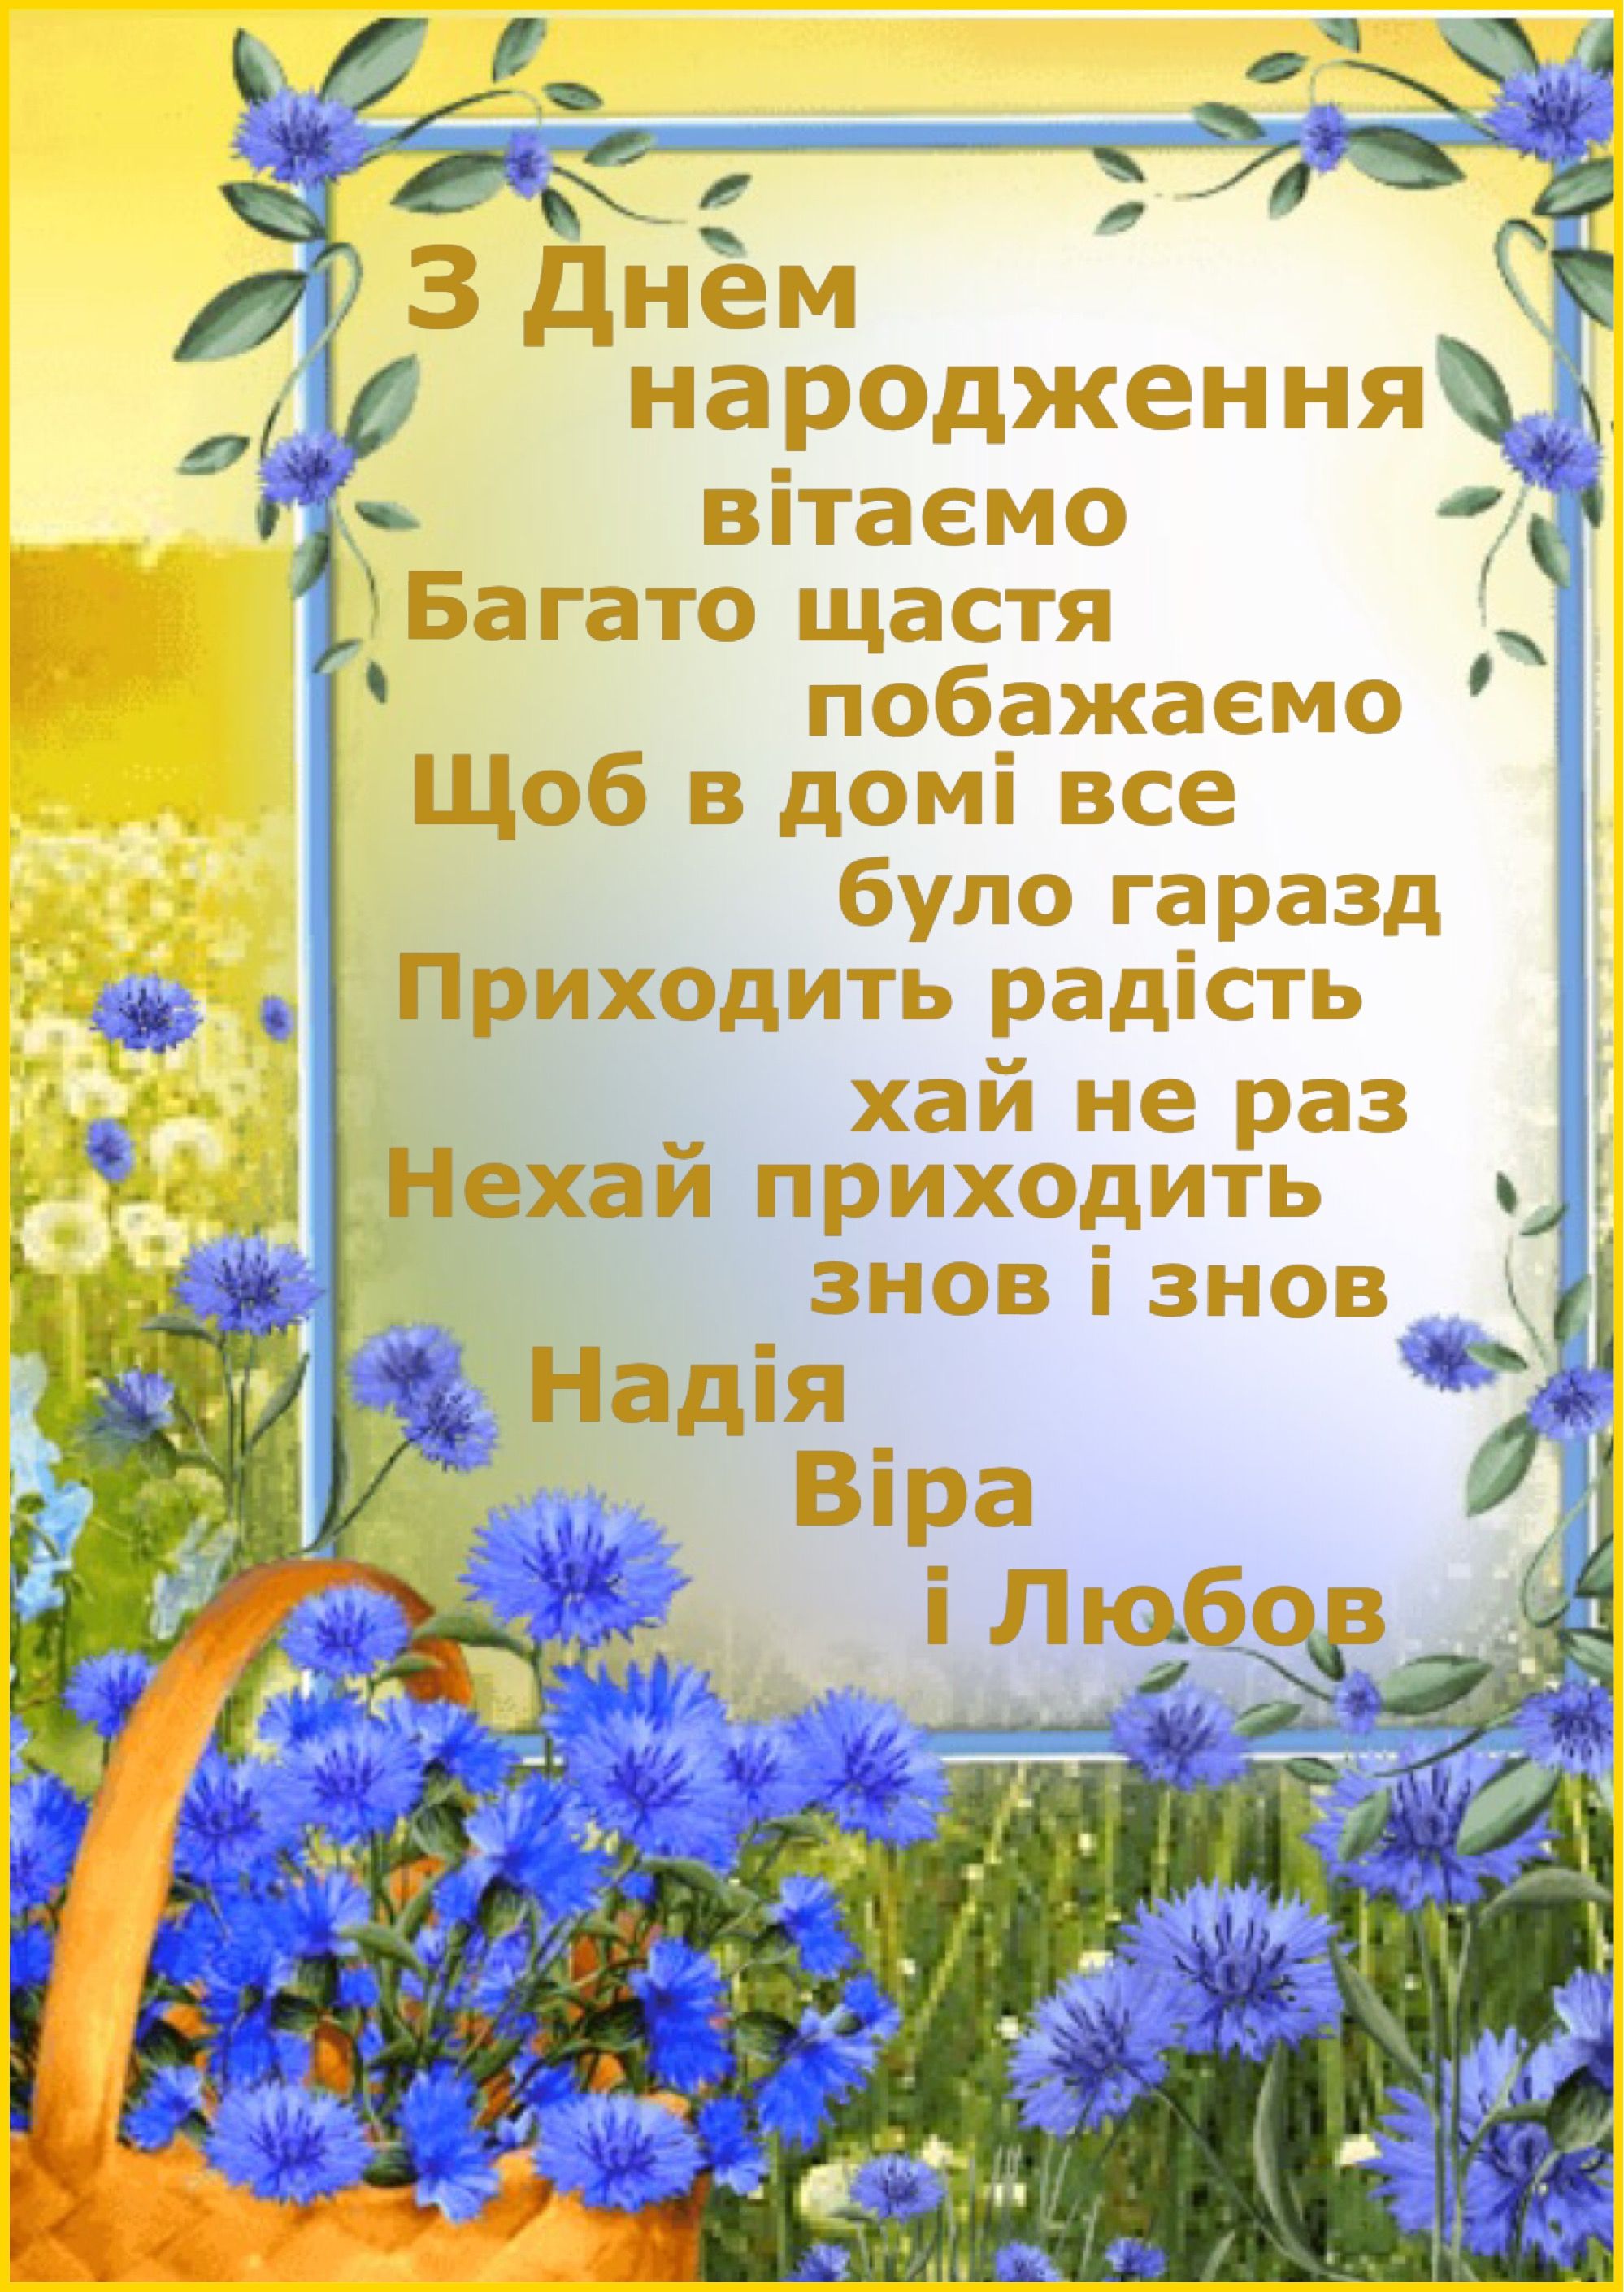 Привітати донечку з днем народження українською мовою
